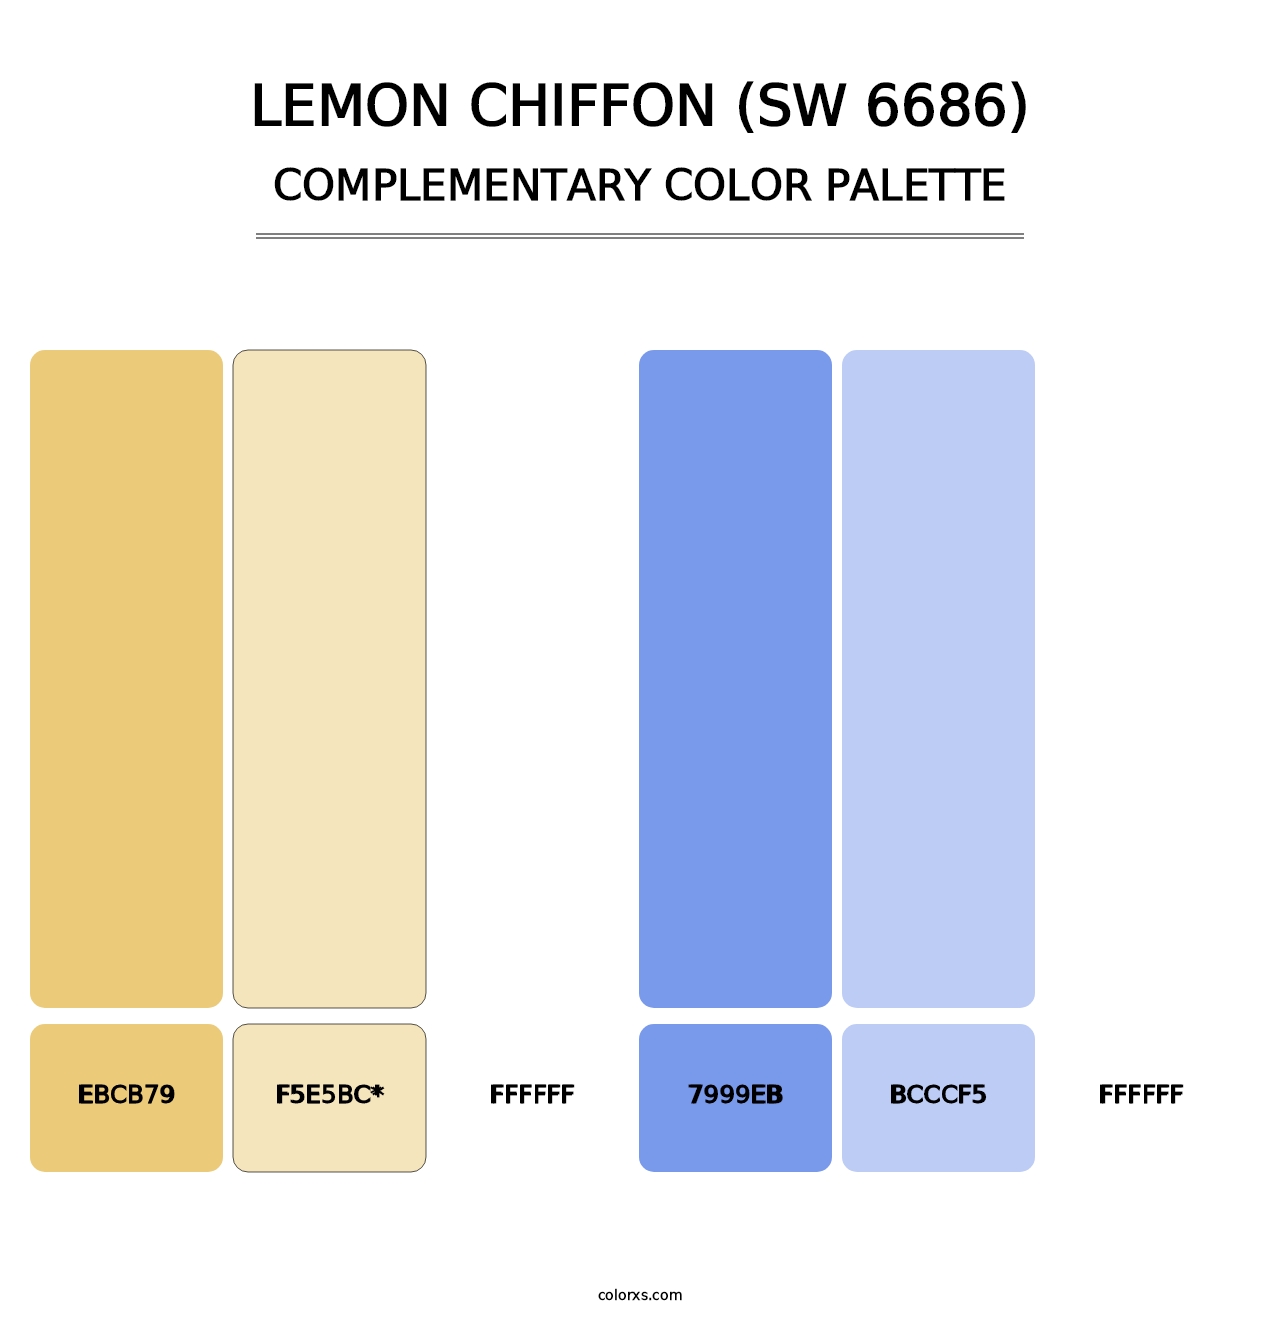 Lemon Chiffon (SW 6686) - Complementary Color Palette